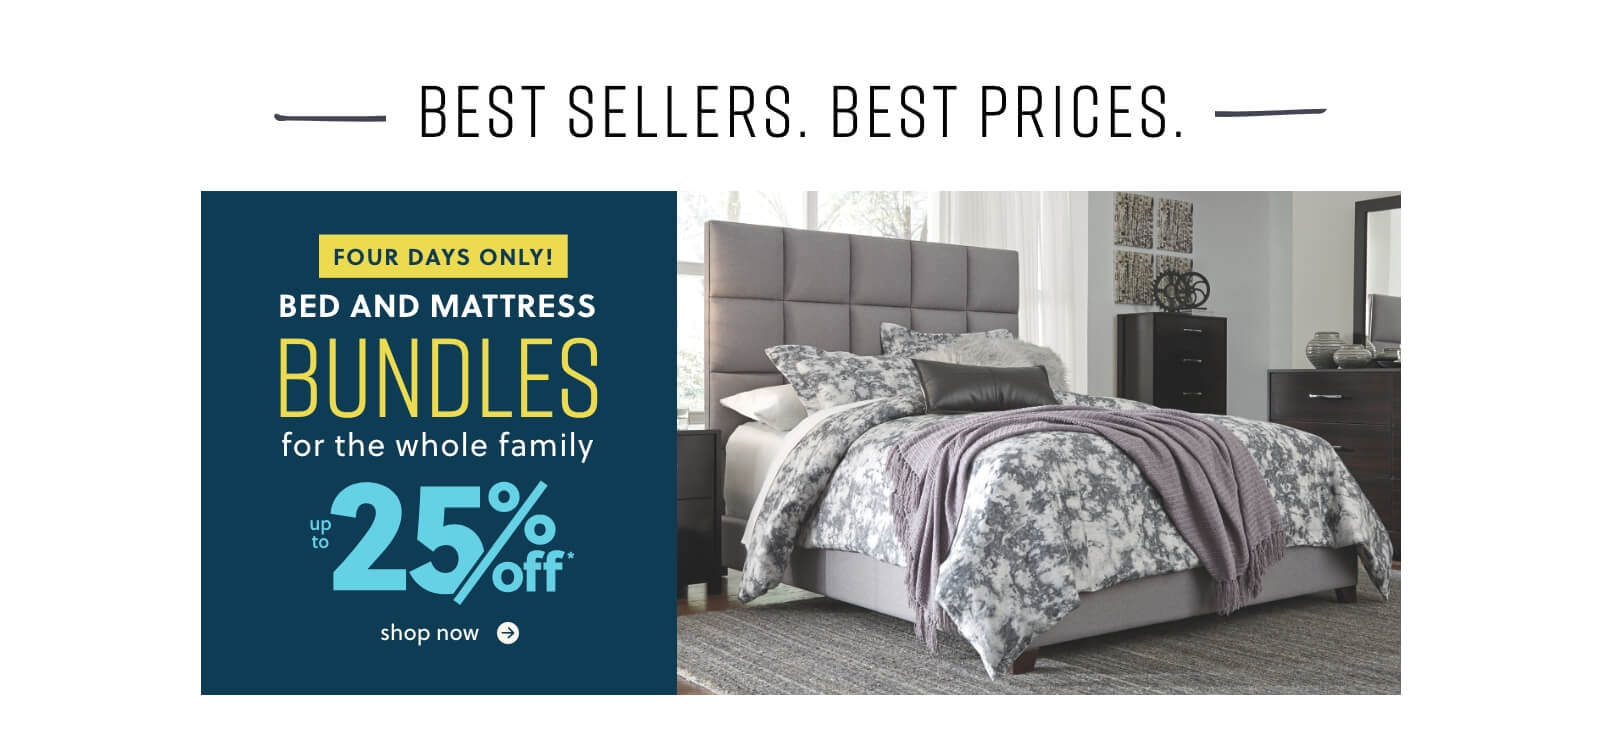 bed and mattress bundles